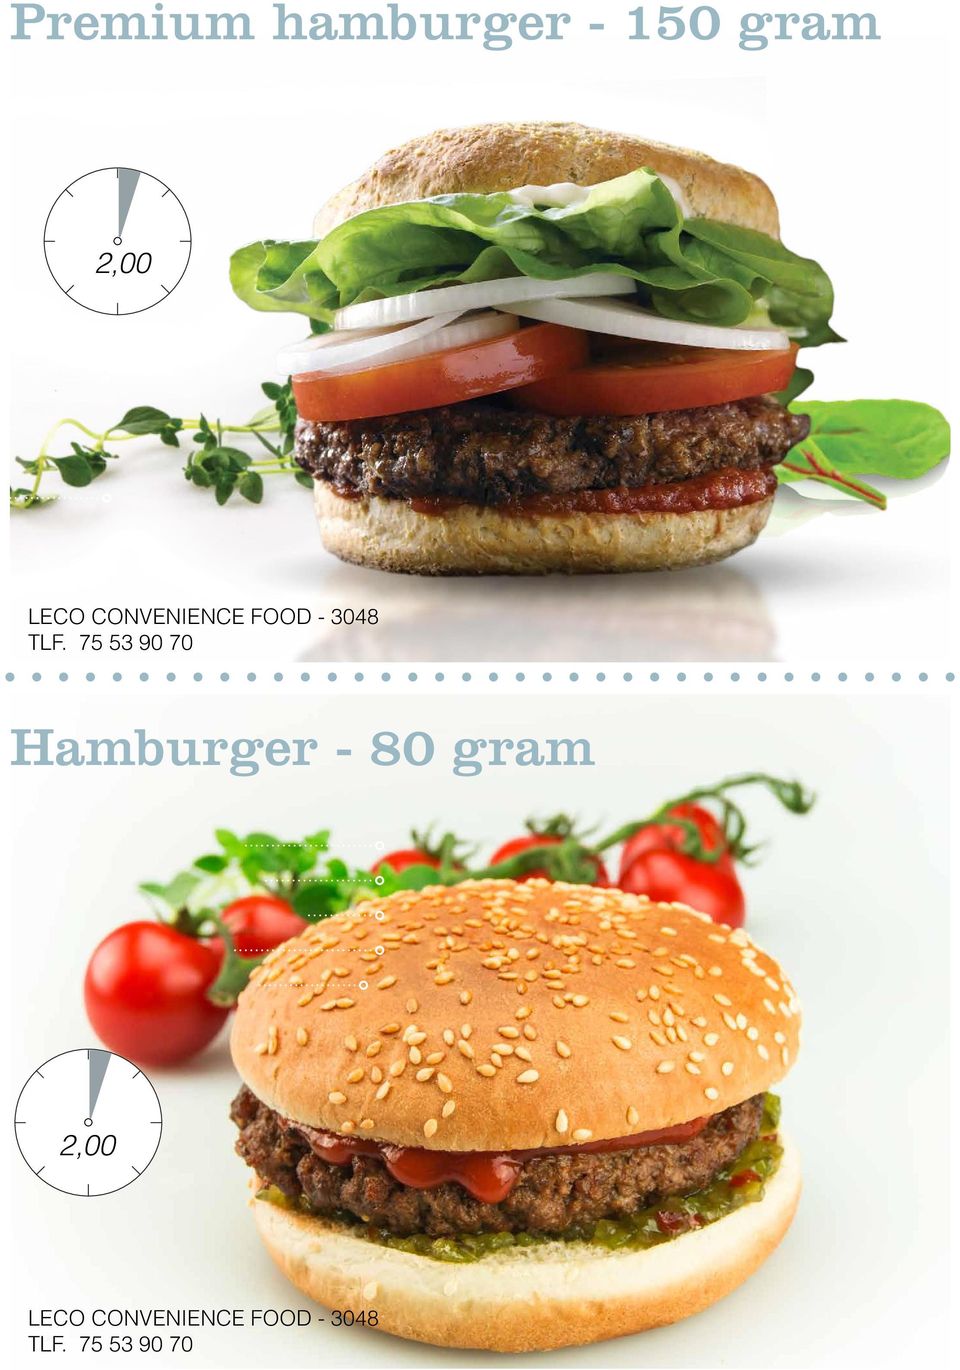 75 53 90 70 Hamburger - 80 gram Fedt: Protein: Kulhydrat: